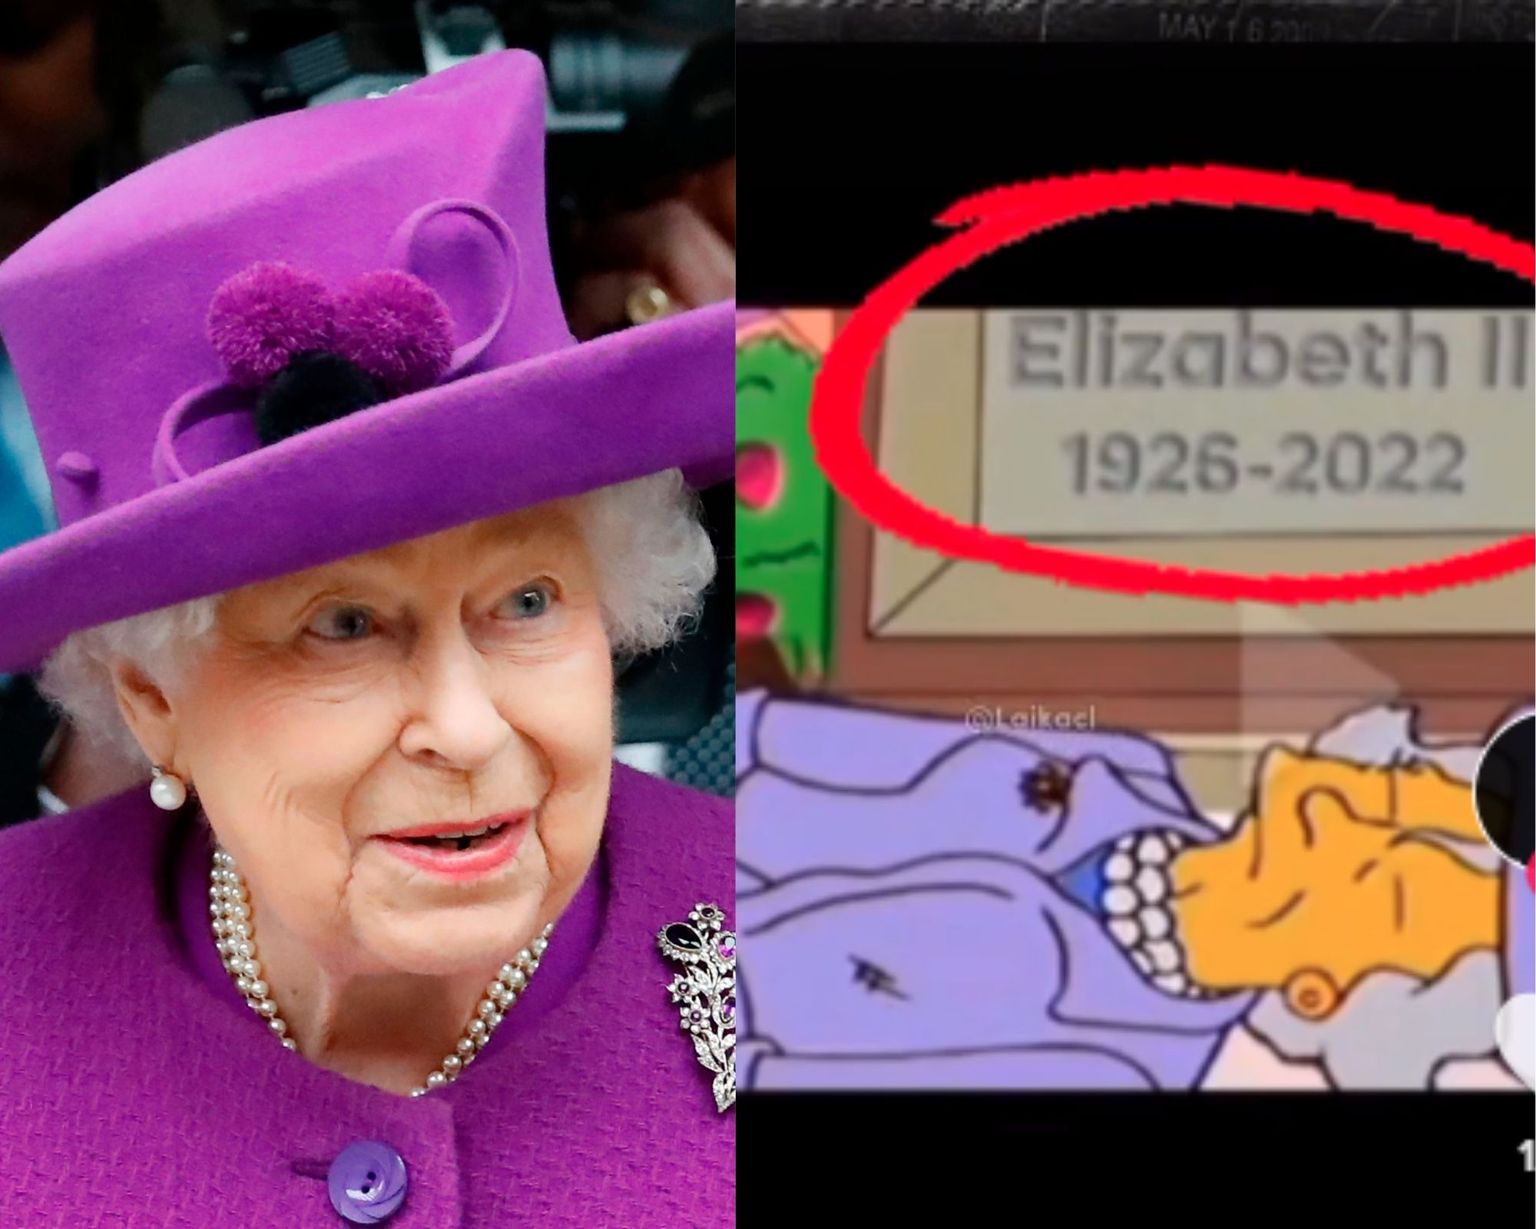 Королева предсказаний. Симпсоны предсказали смерть Елизаветы 2. Сметроь королевы Елизаветы 2. Симпсоны предсказали смерть королевы Елизаветы.